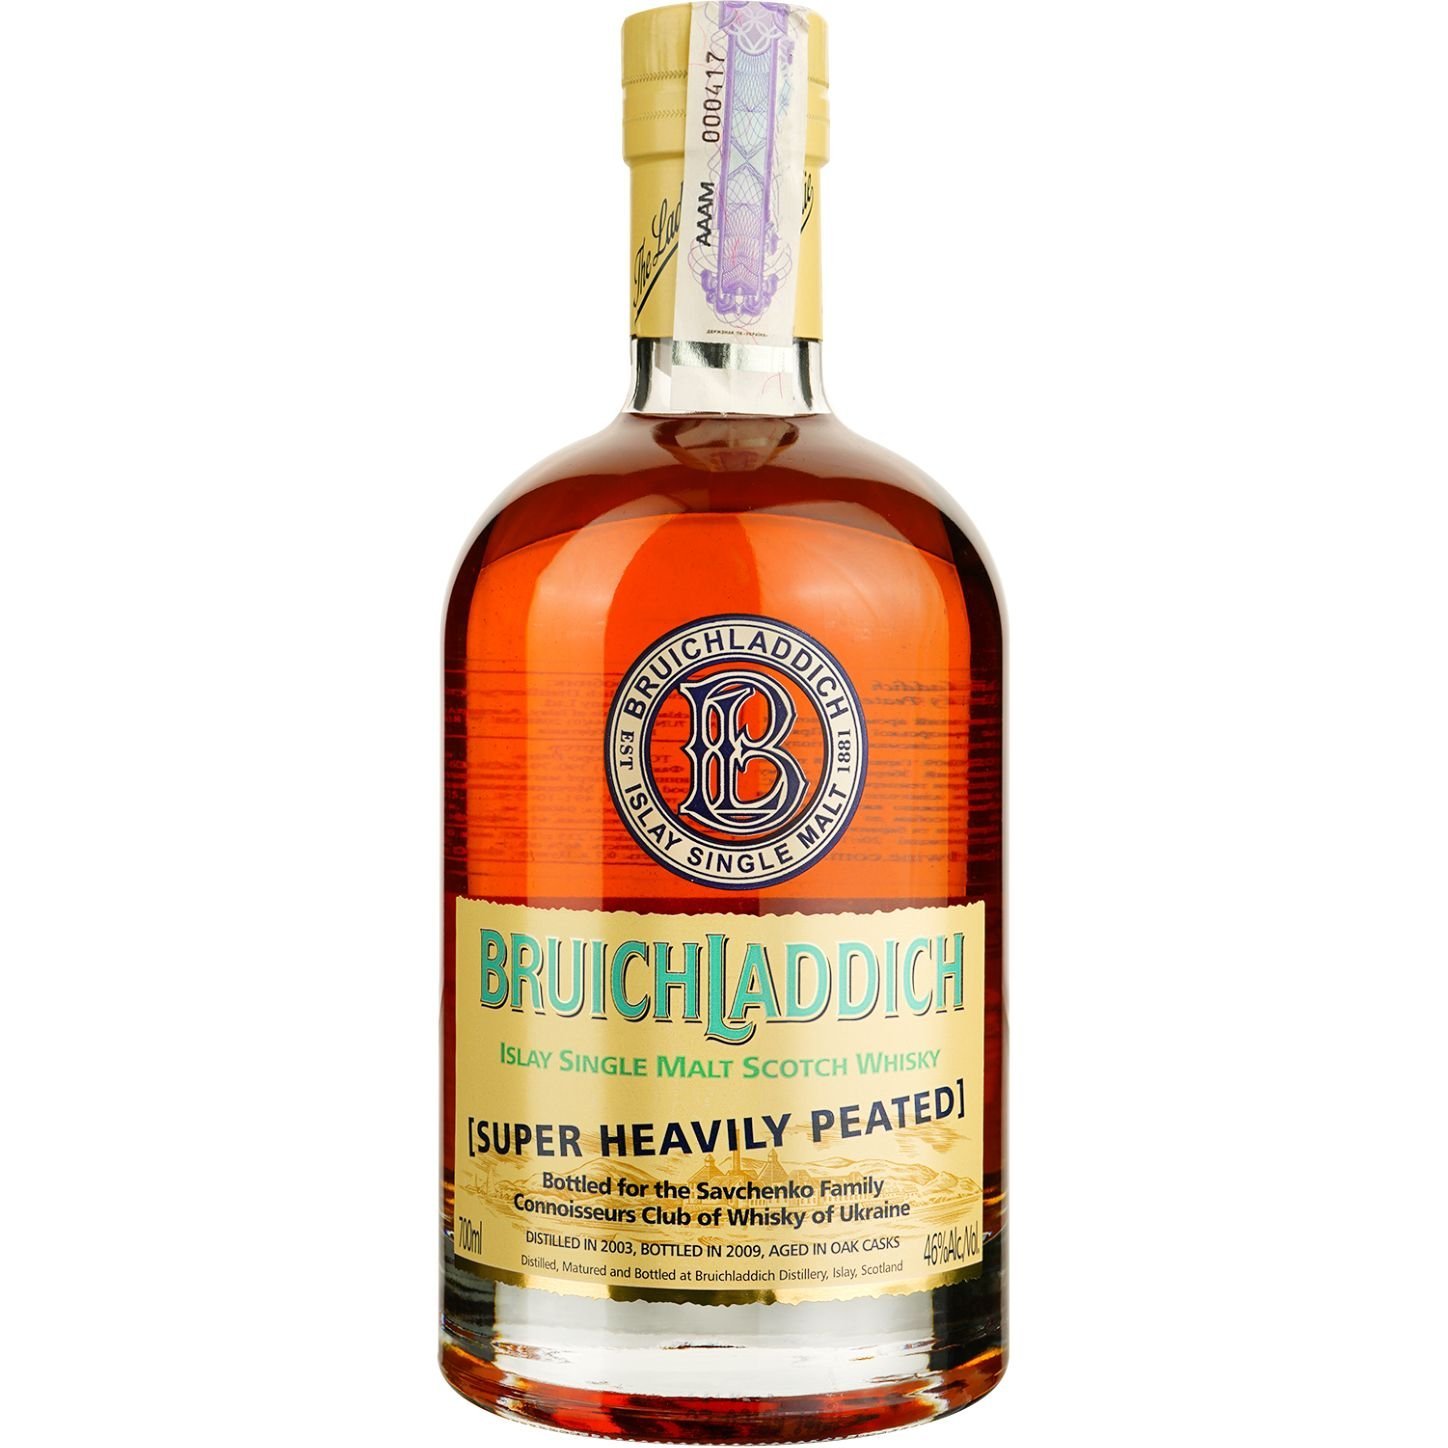 Віскі Bruichladdich Super Heavily Peated Single Malt Scotch Whisky, у подарунковій упаковці, 46%, 0,7 л - фото 2